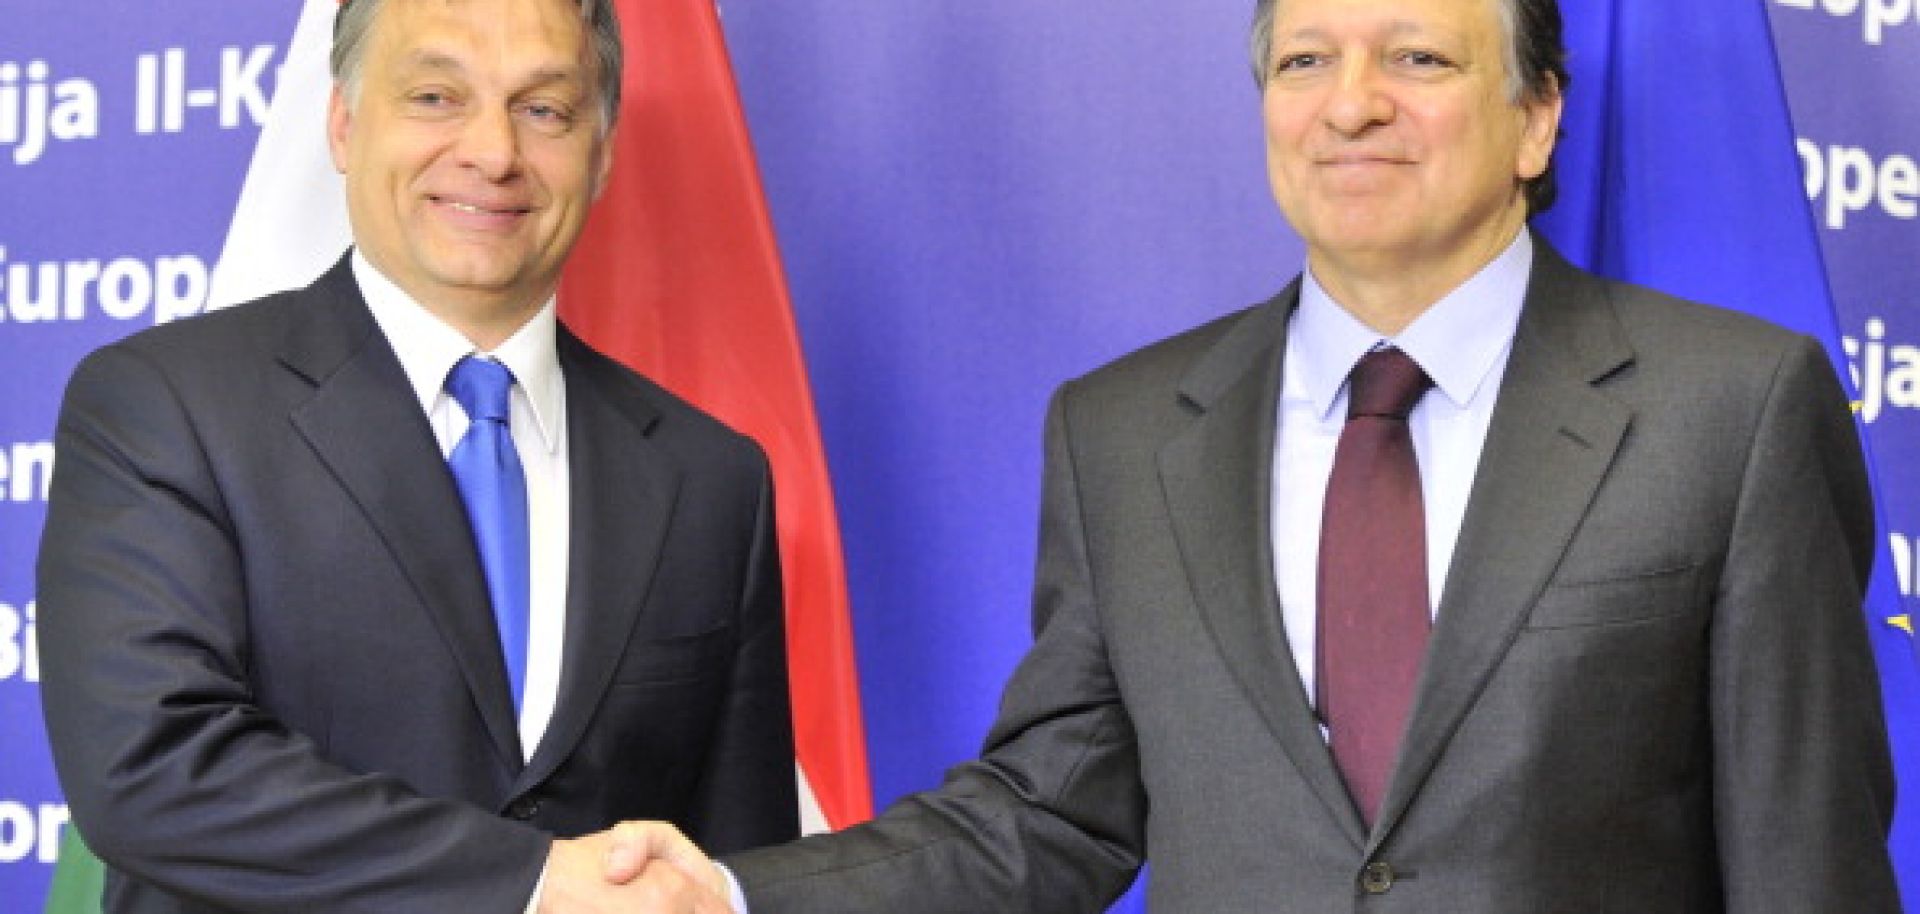 EU Pushes a Hard Line on Hungary